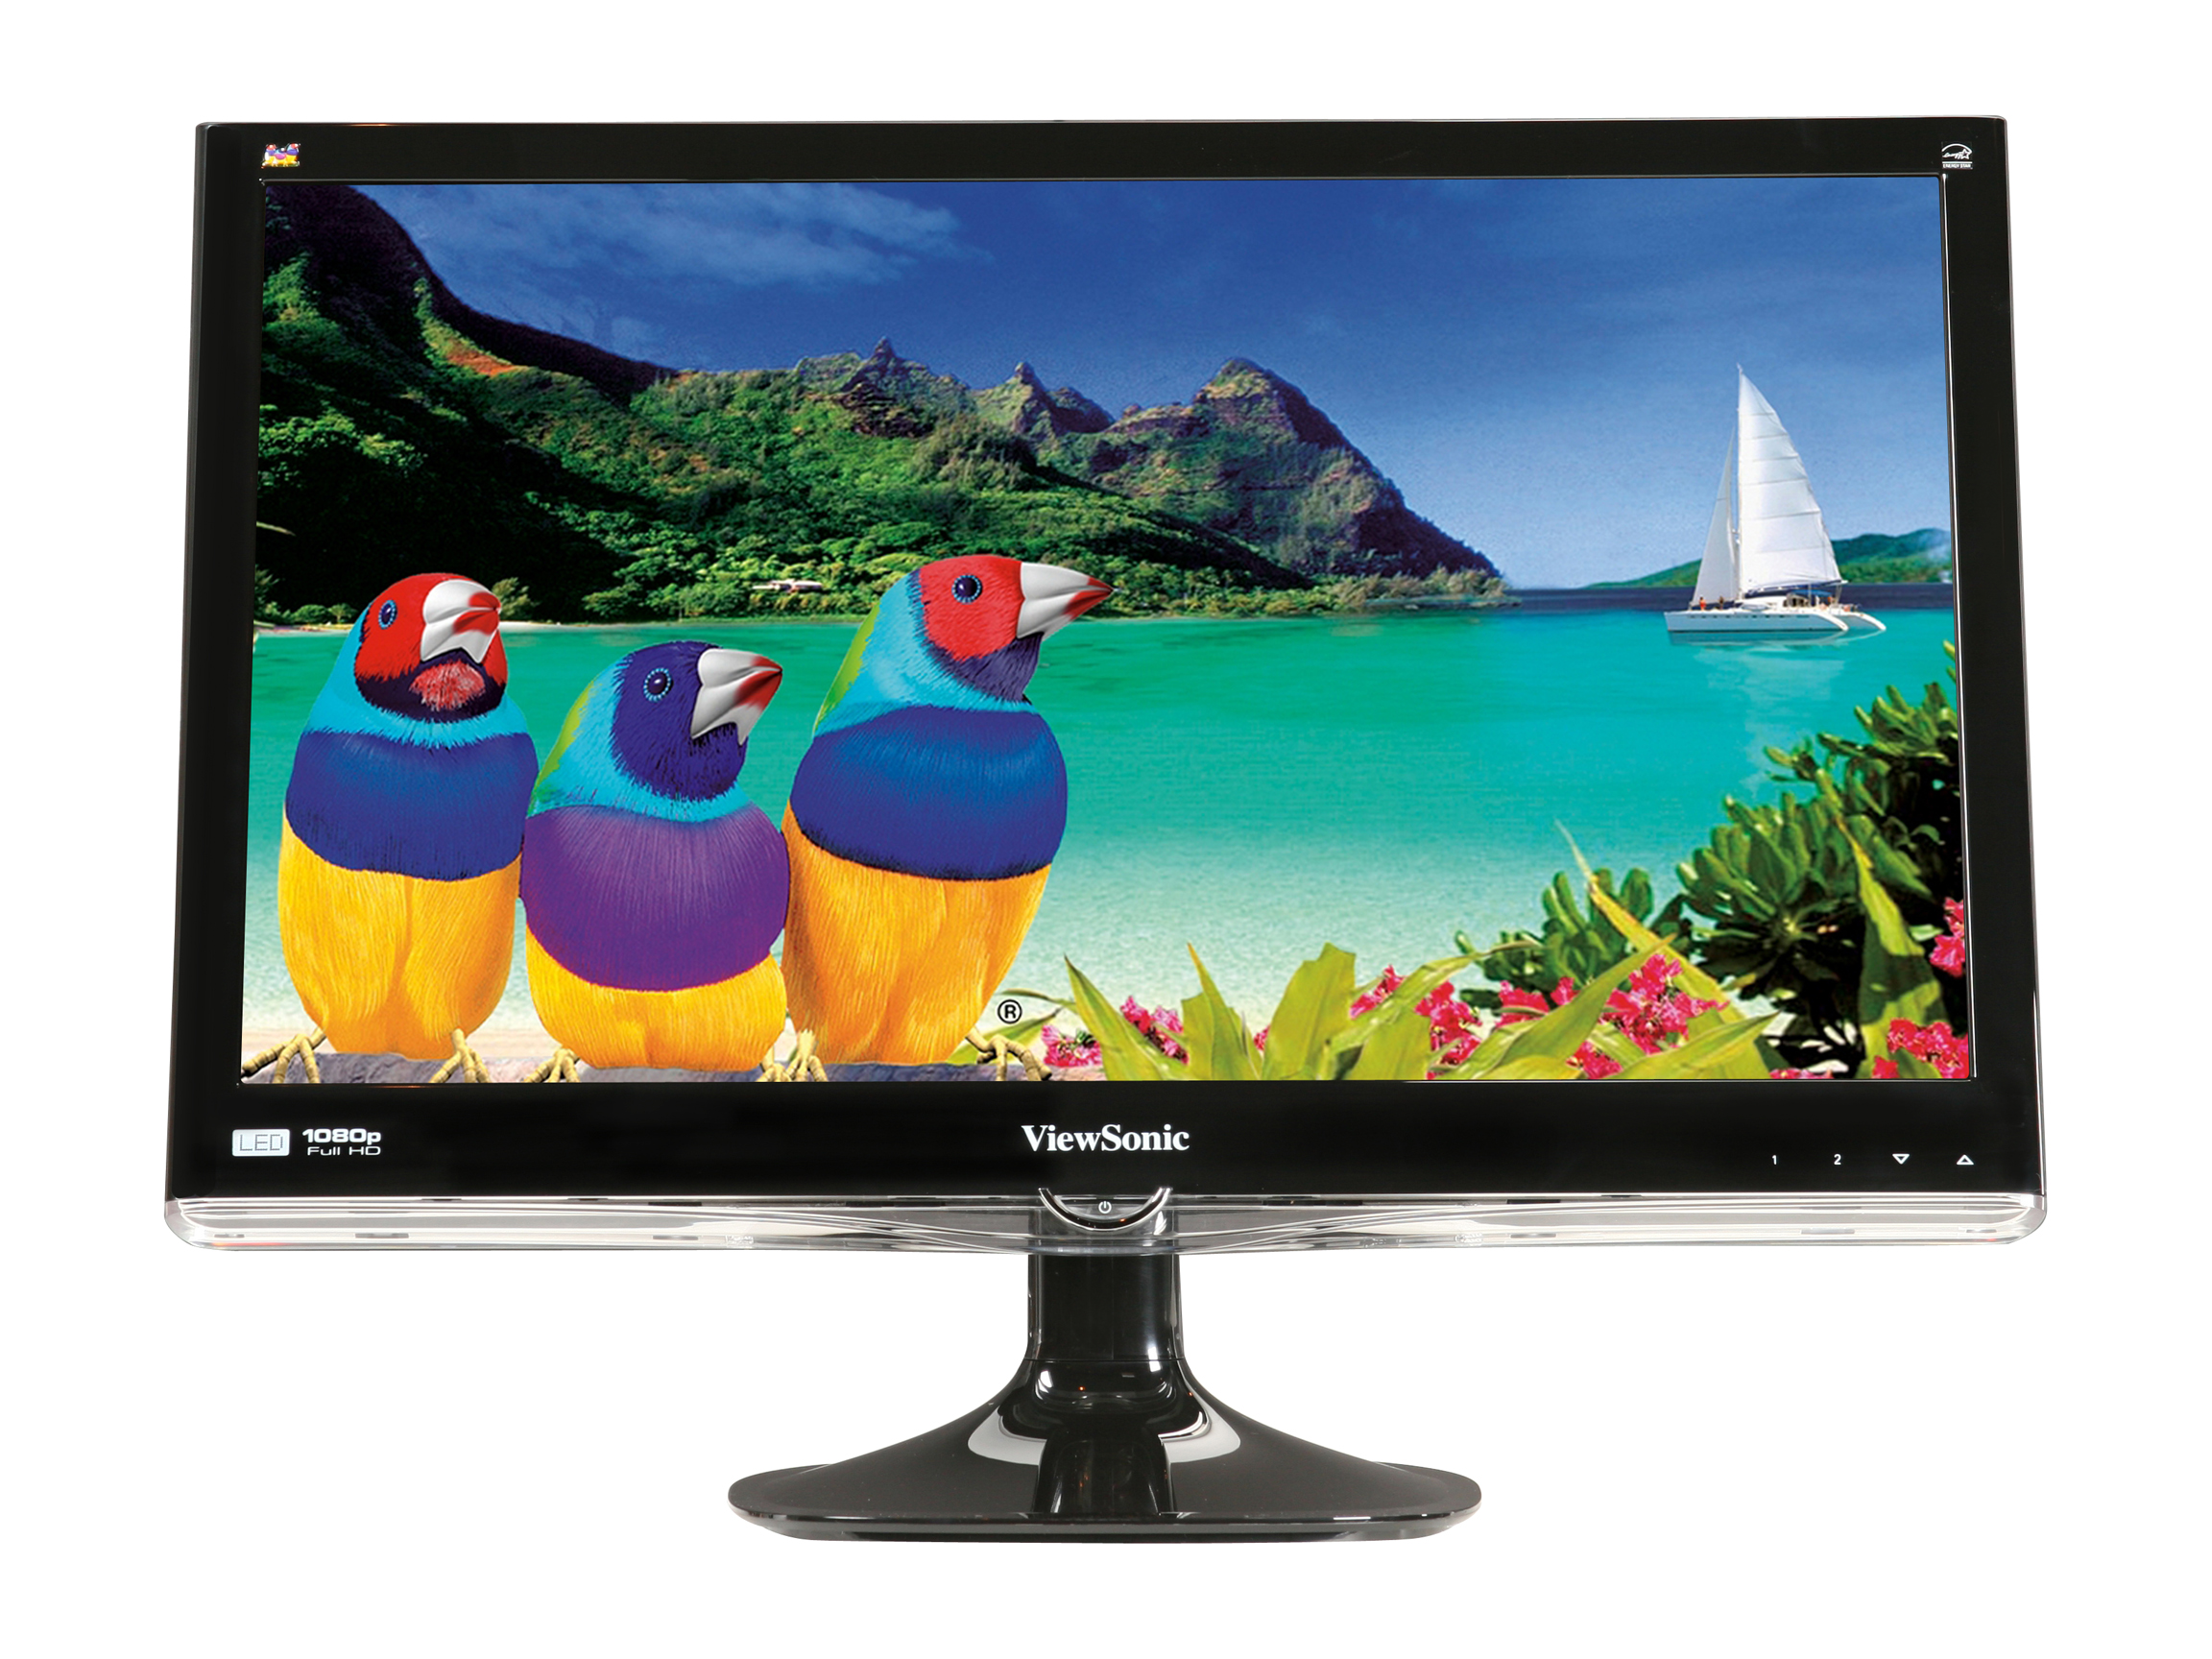 ViewSonic VX2450wm LED Black 24" (23.6" Vis) LED Backlight LCD monitor